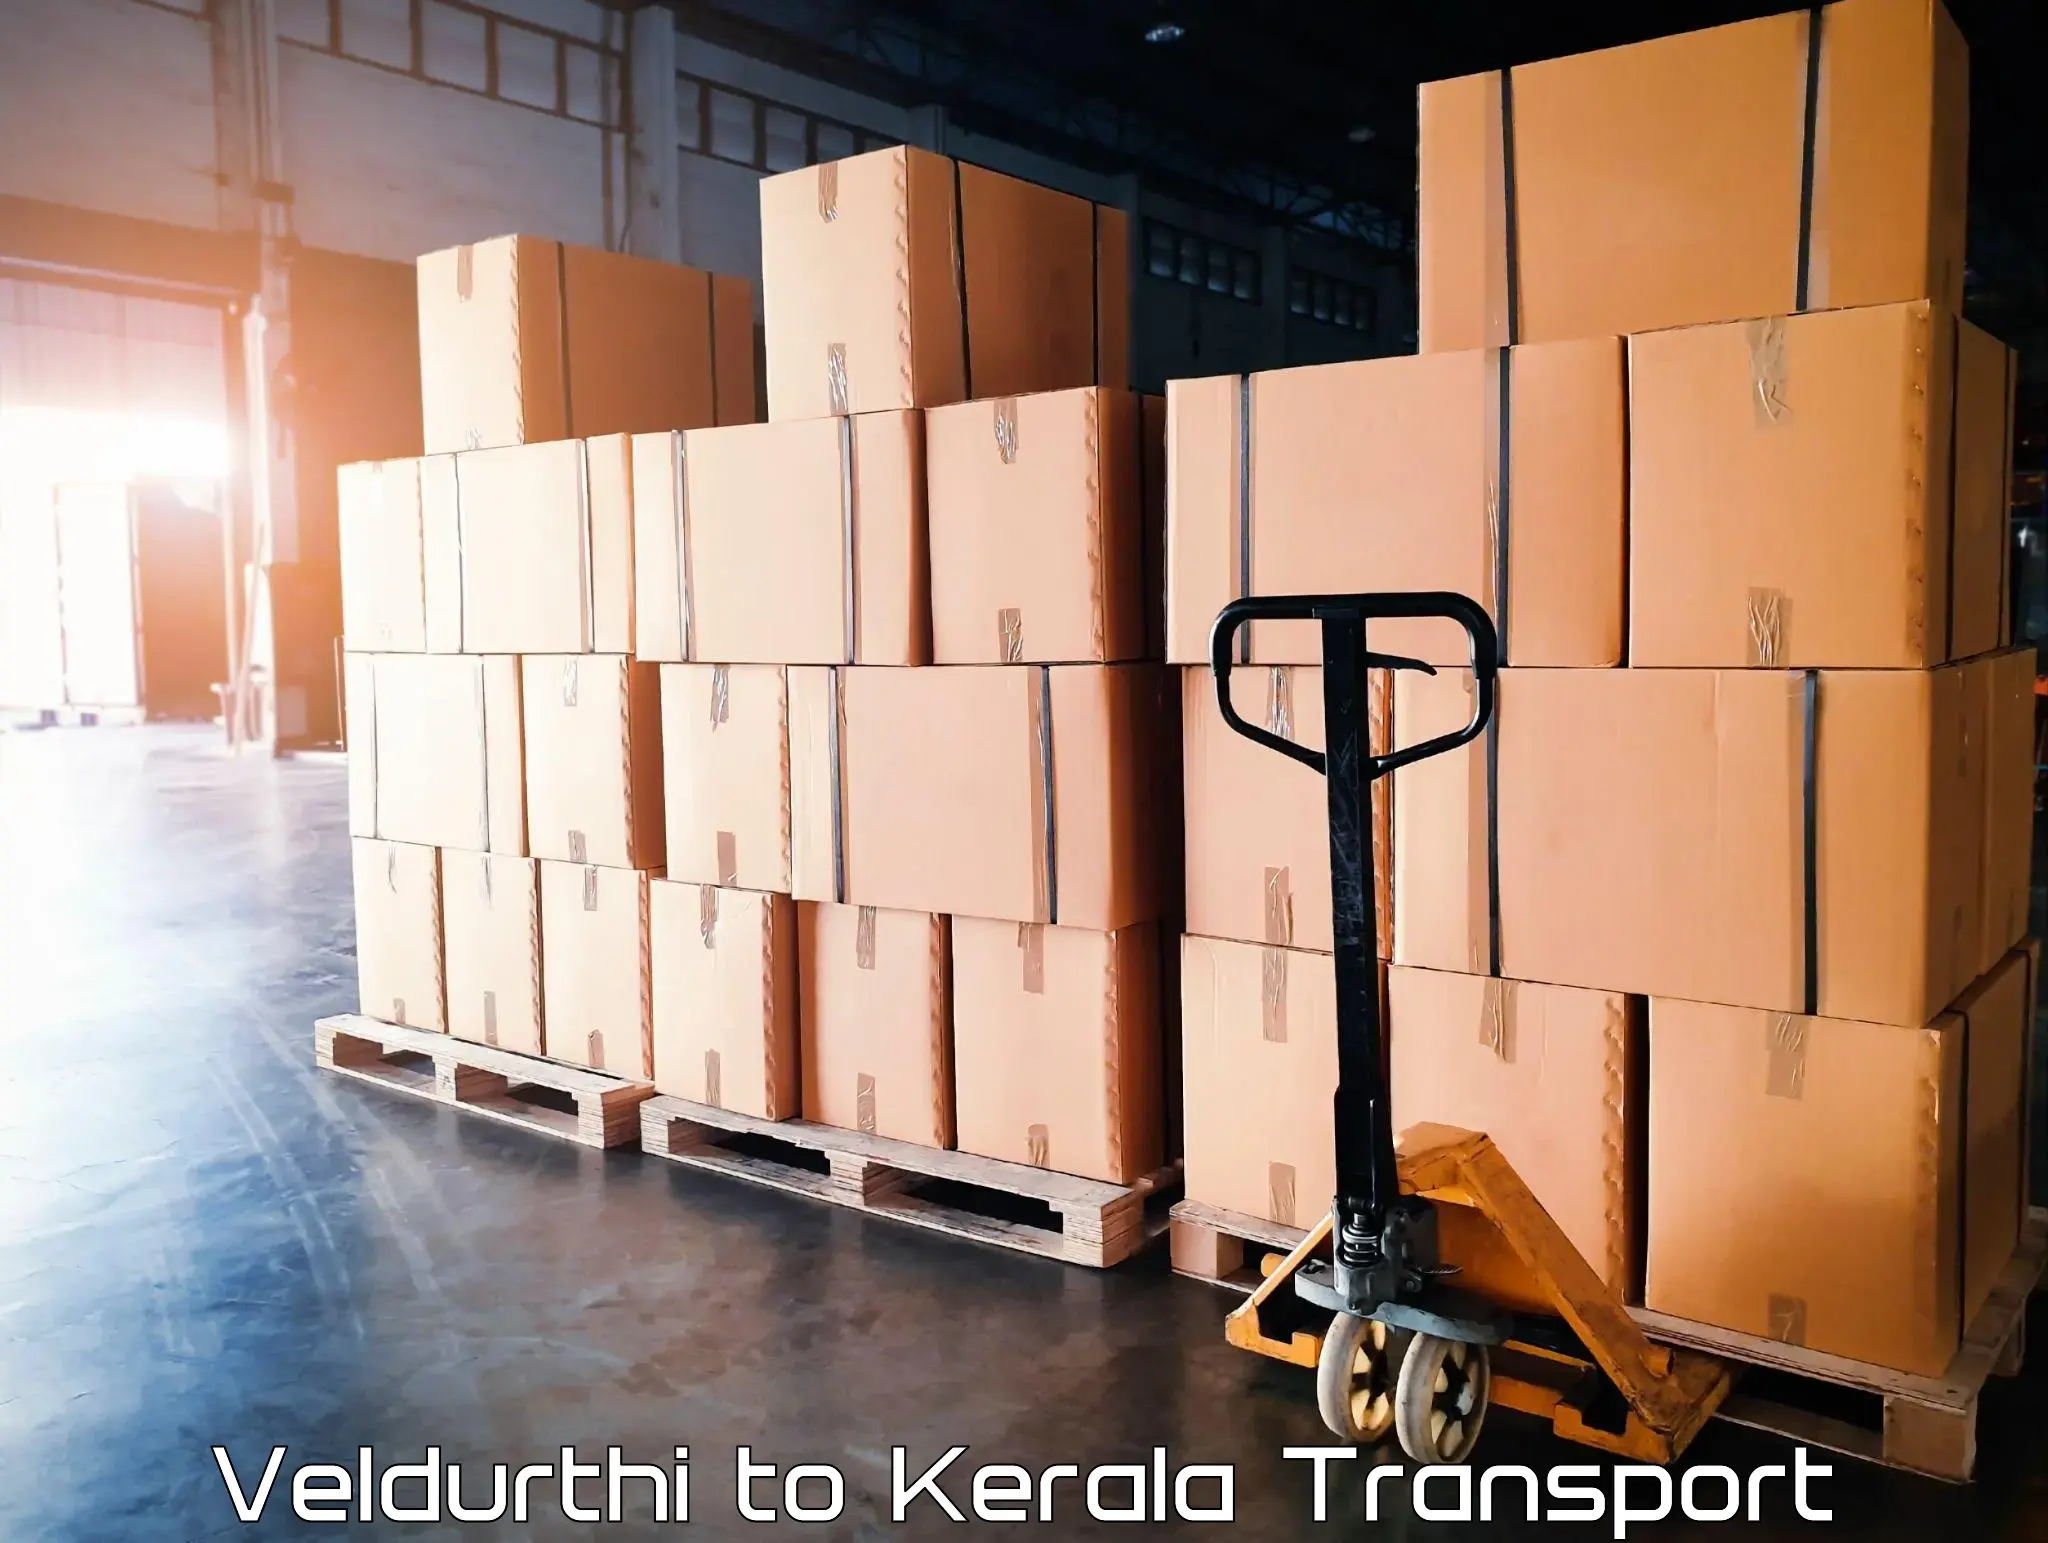 Cargo transportation services Veldurthi to Cochin Port Kochi